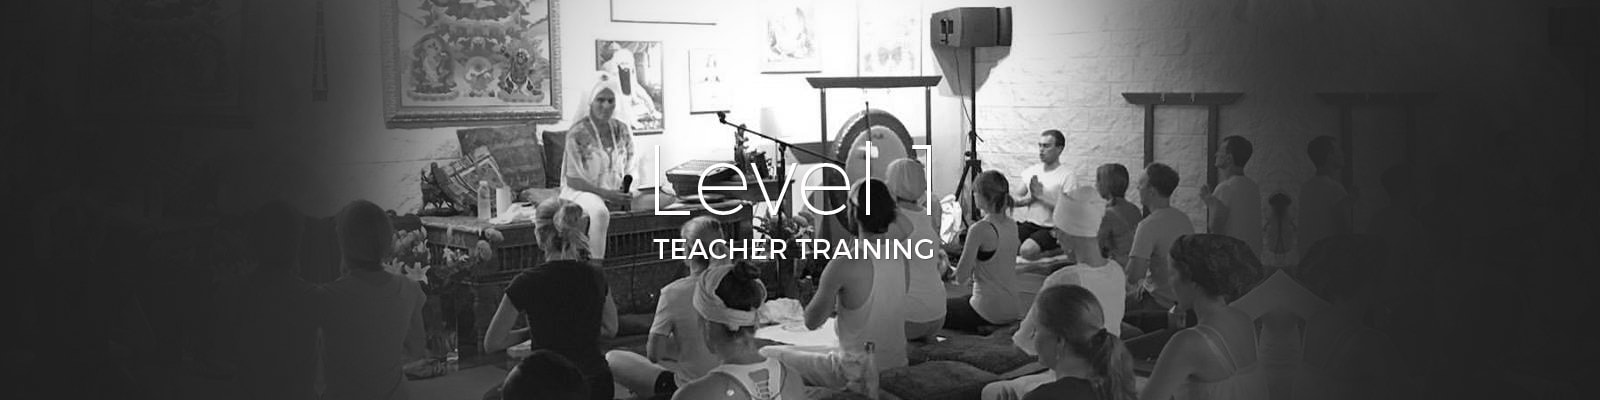 Level1 Teacher Training